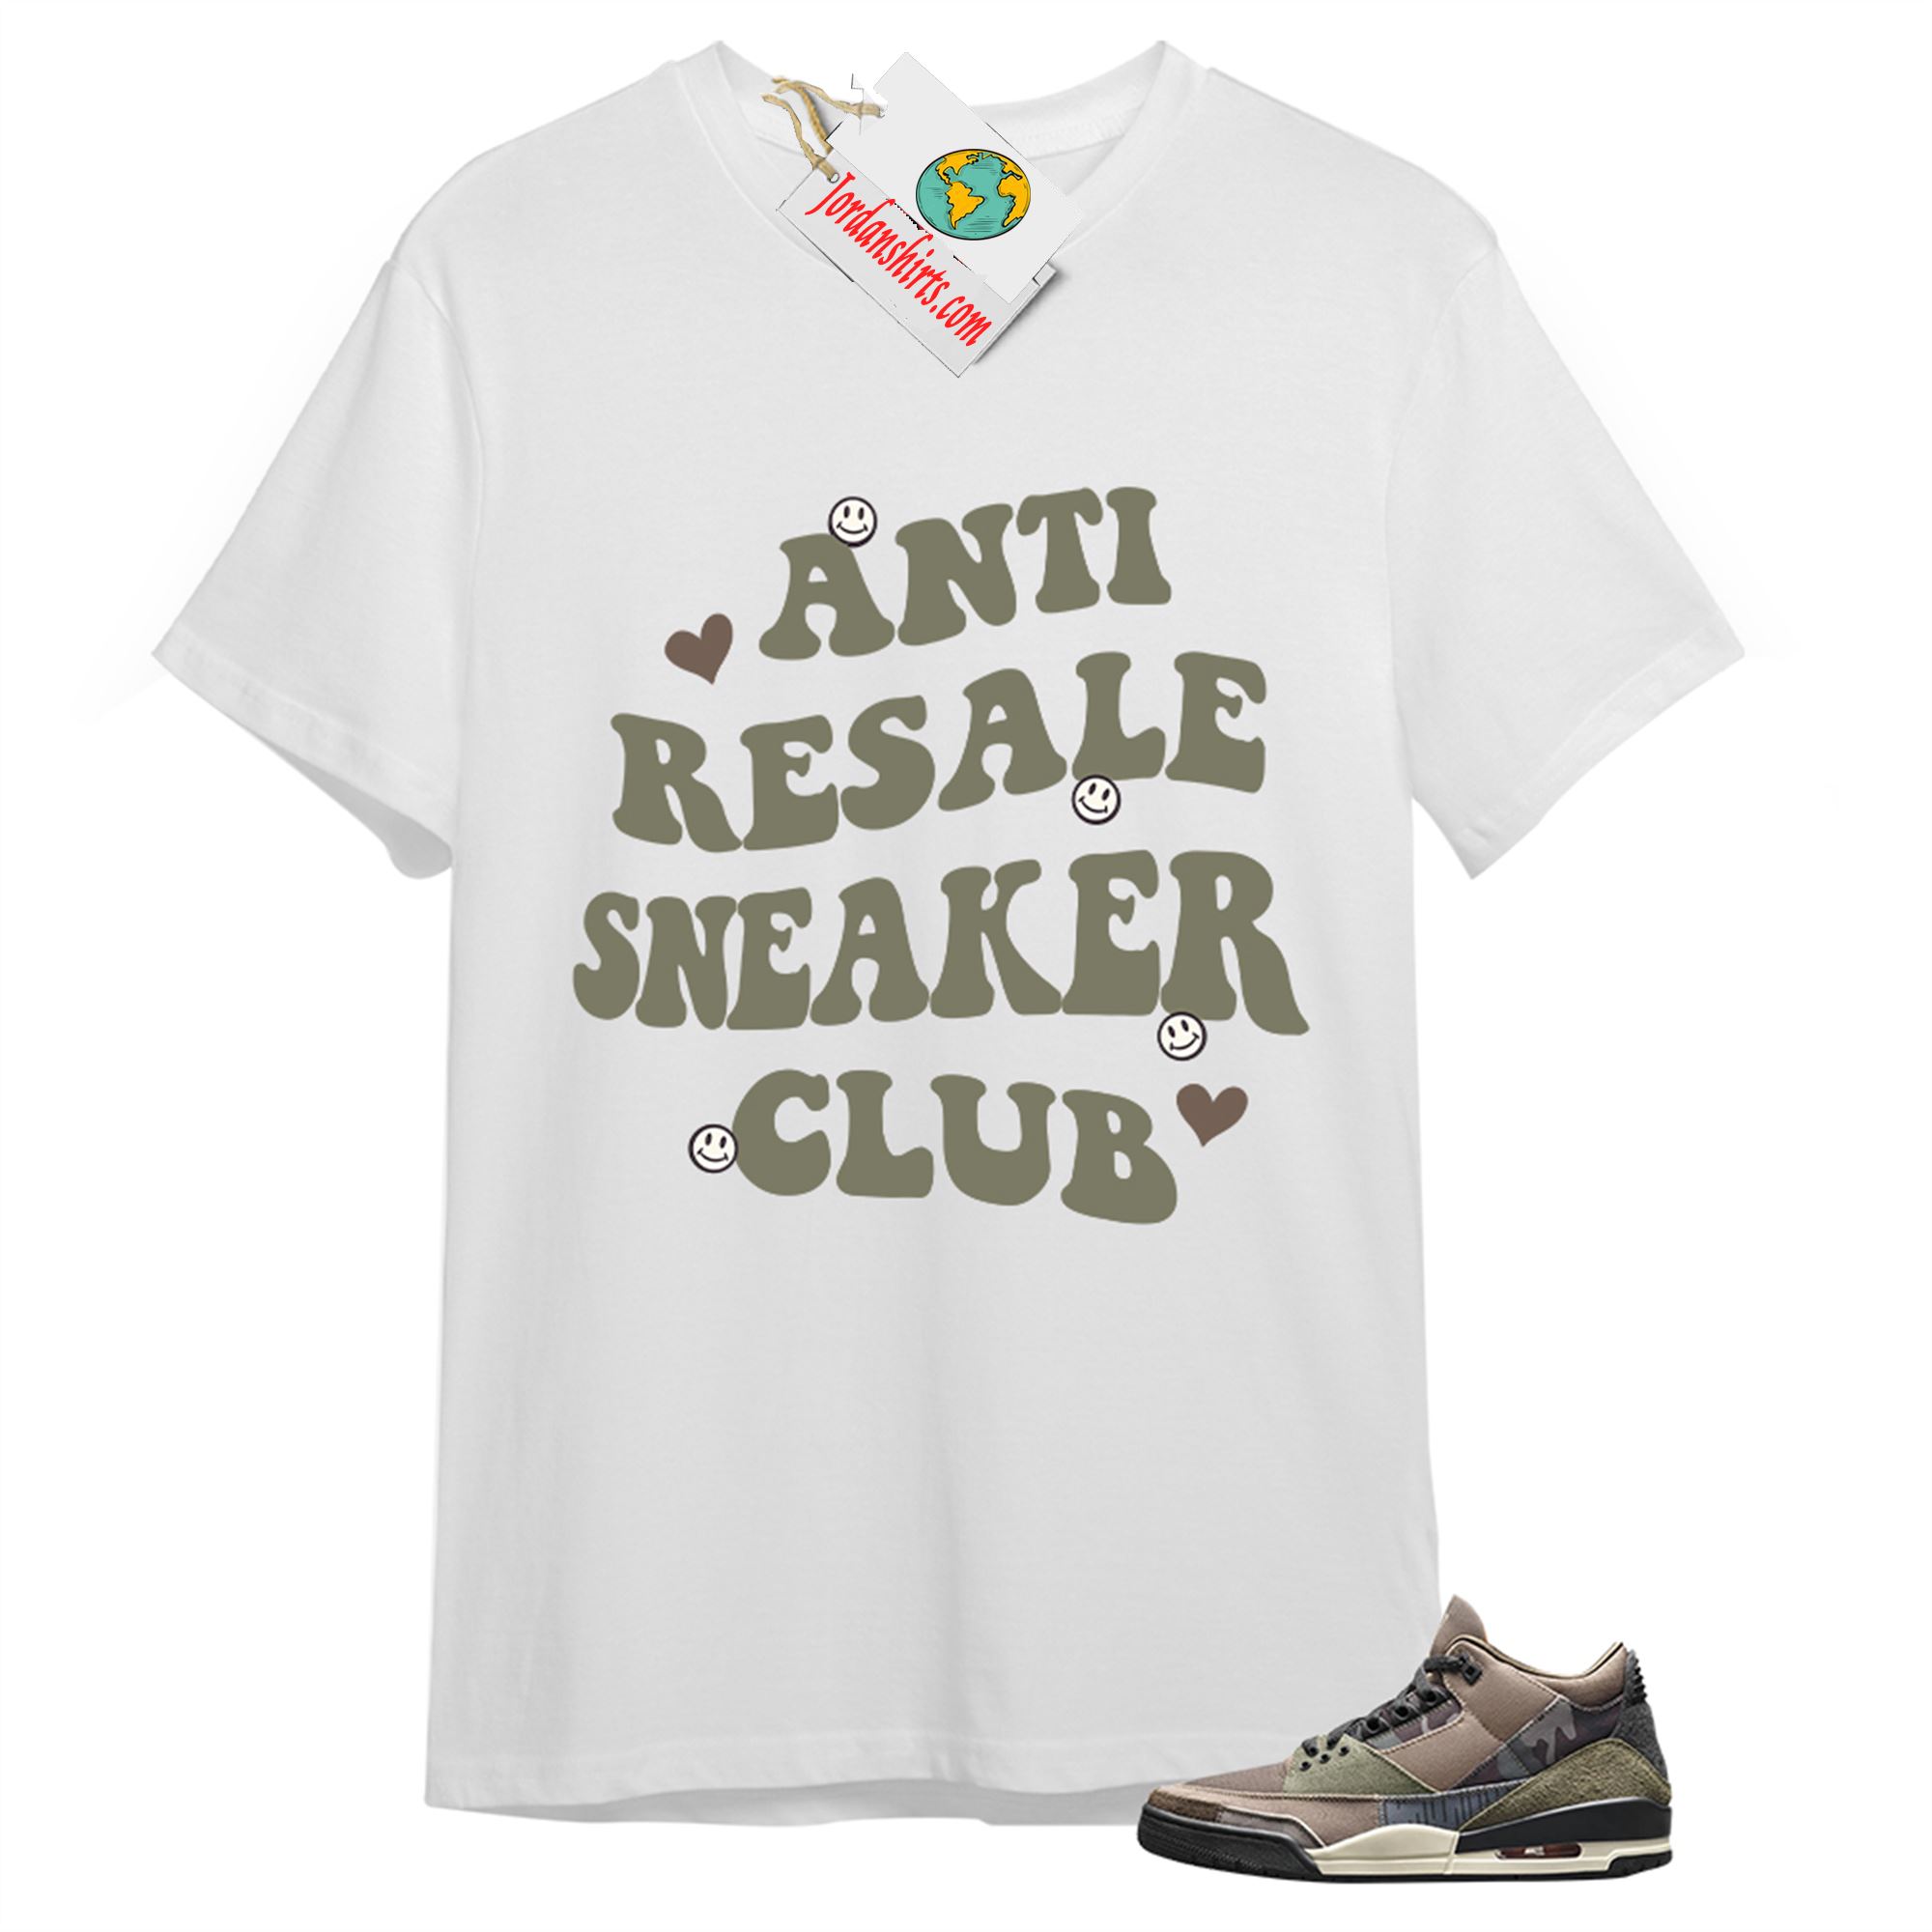 Jordan 3 Shirt, Anti Resale Sneaker Club White T-shirt Air Jordan 3 Camo 3s Plus Size Up To 5xl